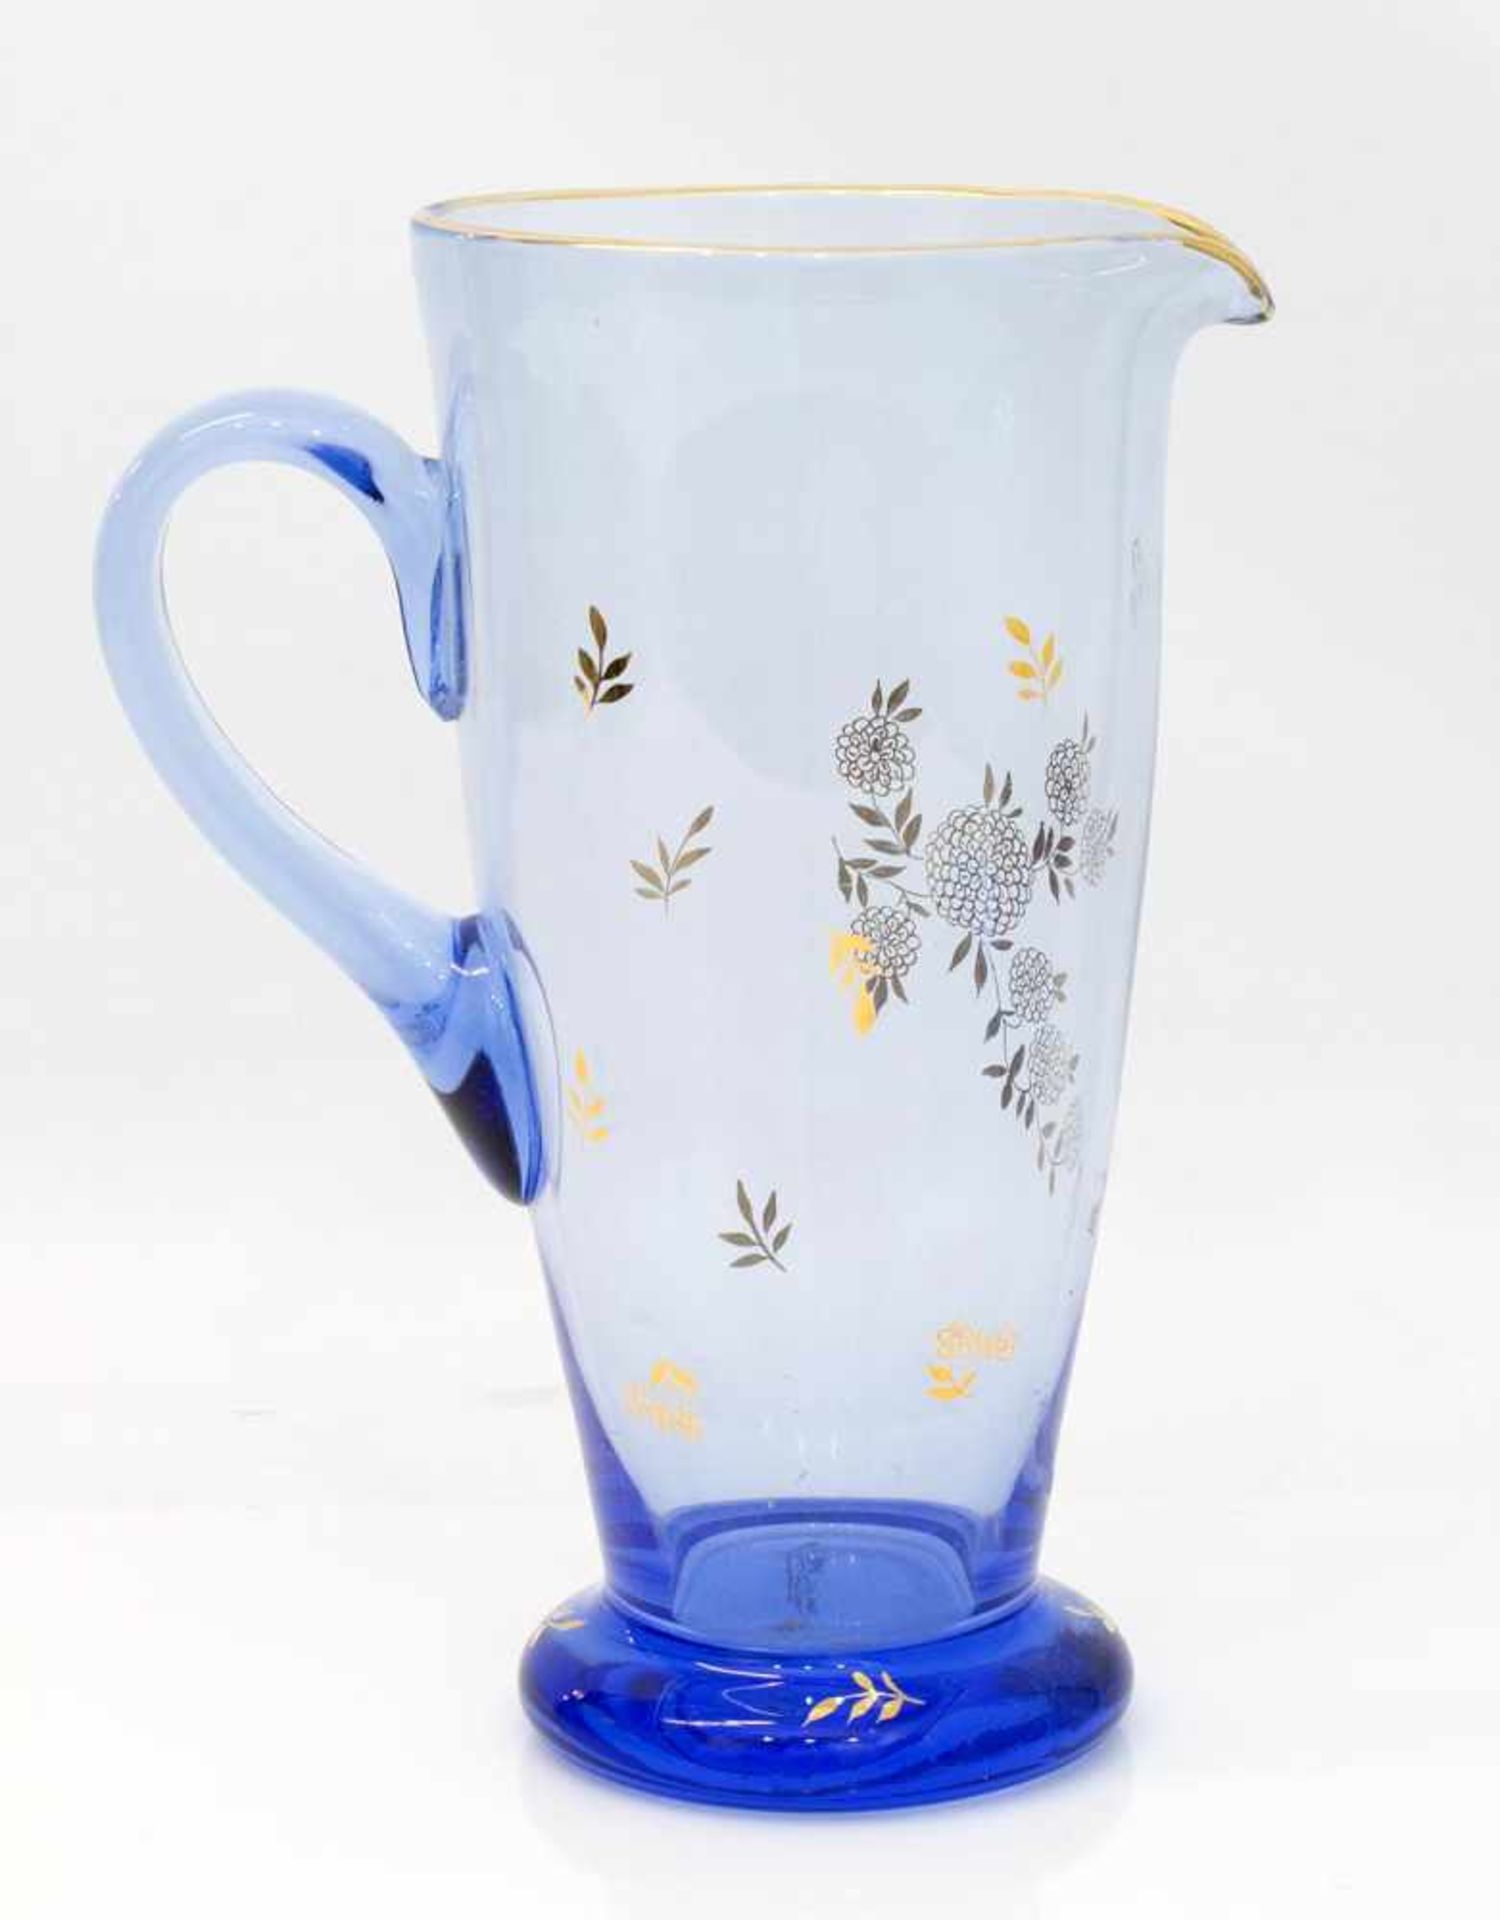 Saftkrug 20. Jh., Blauglas mit floralem Golddekor, H. 27 cm